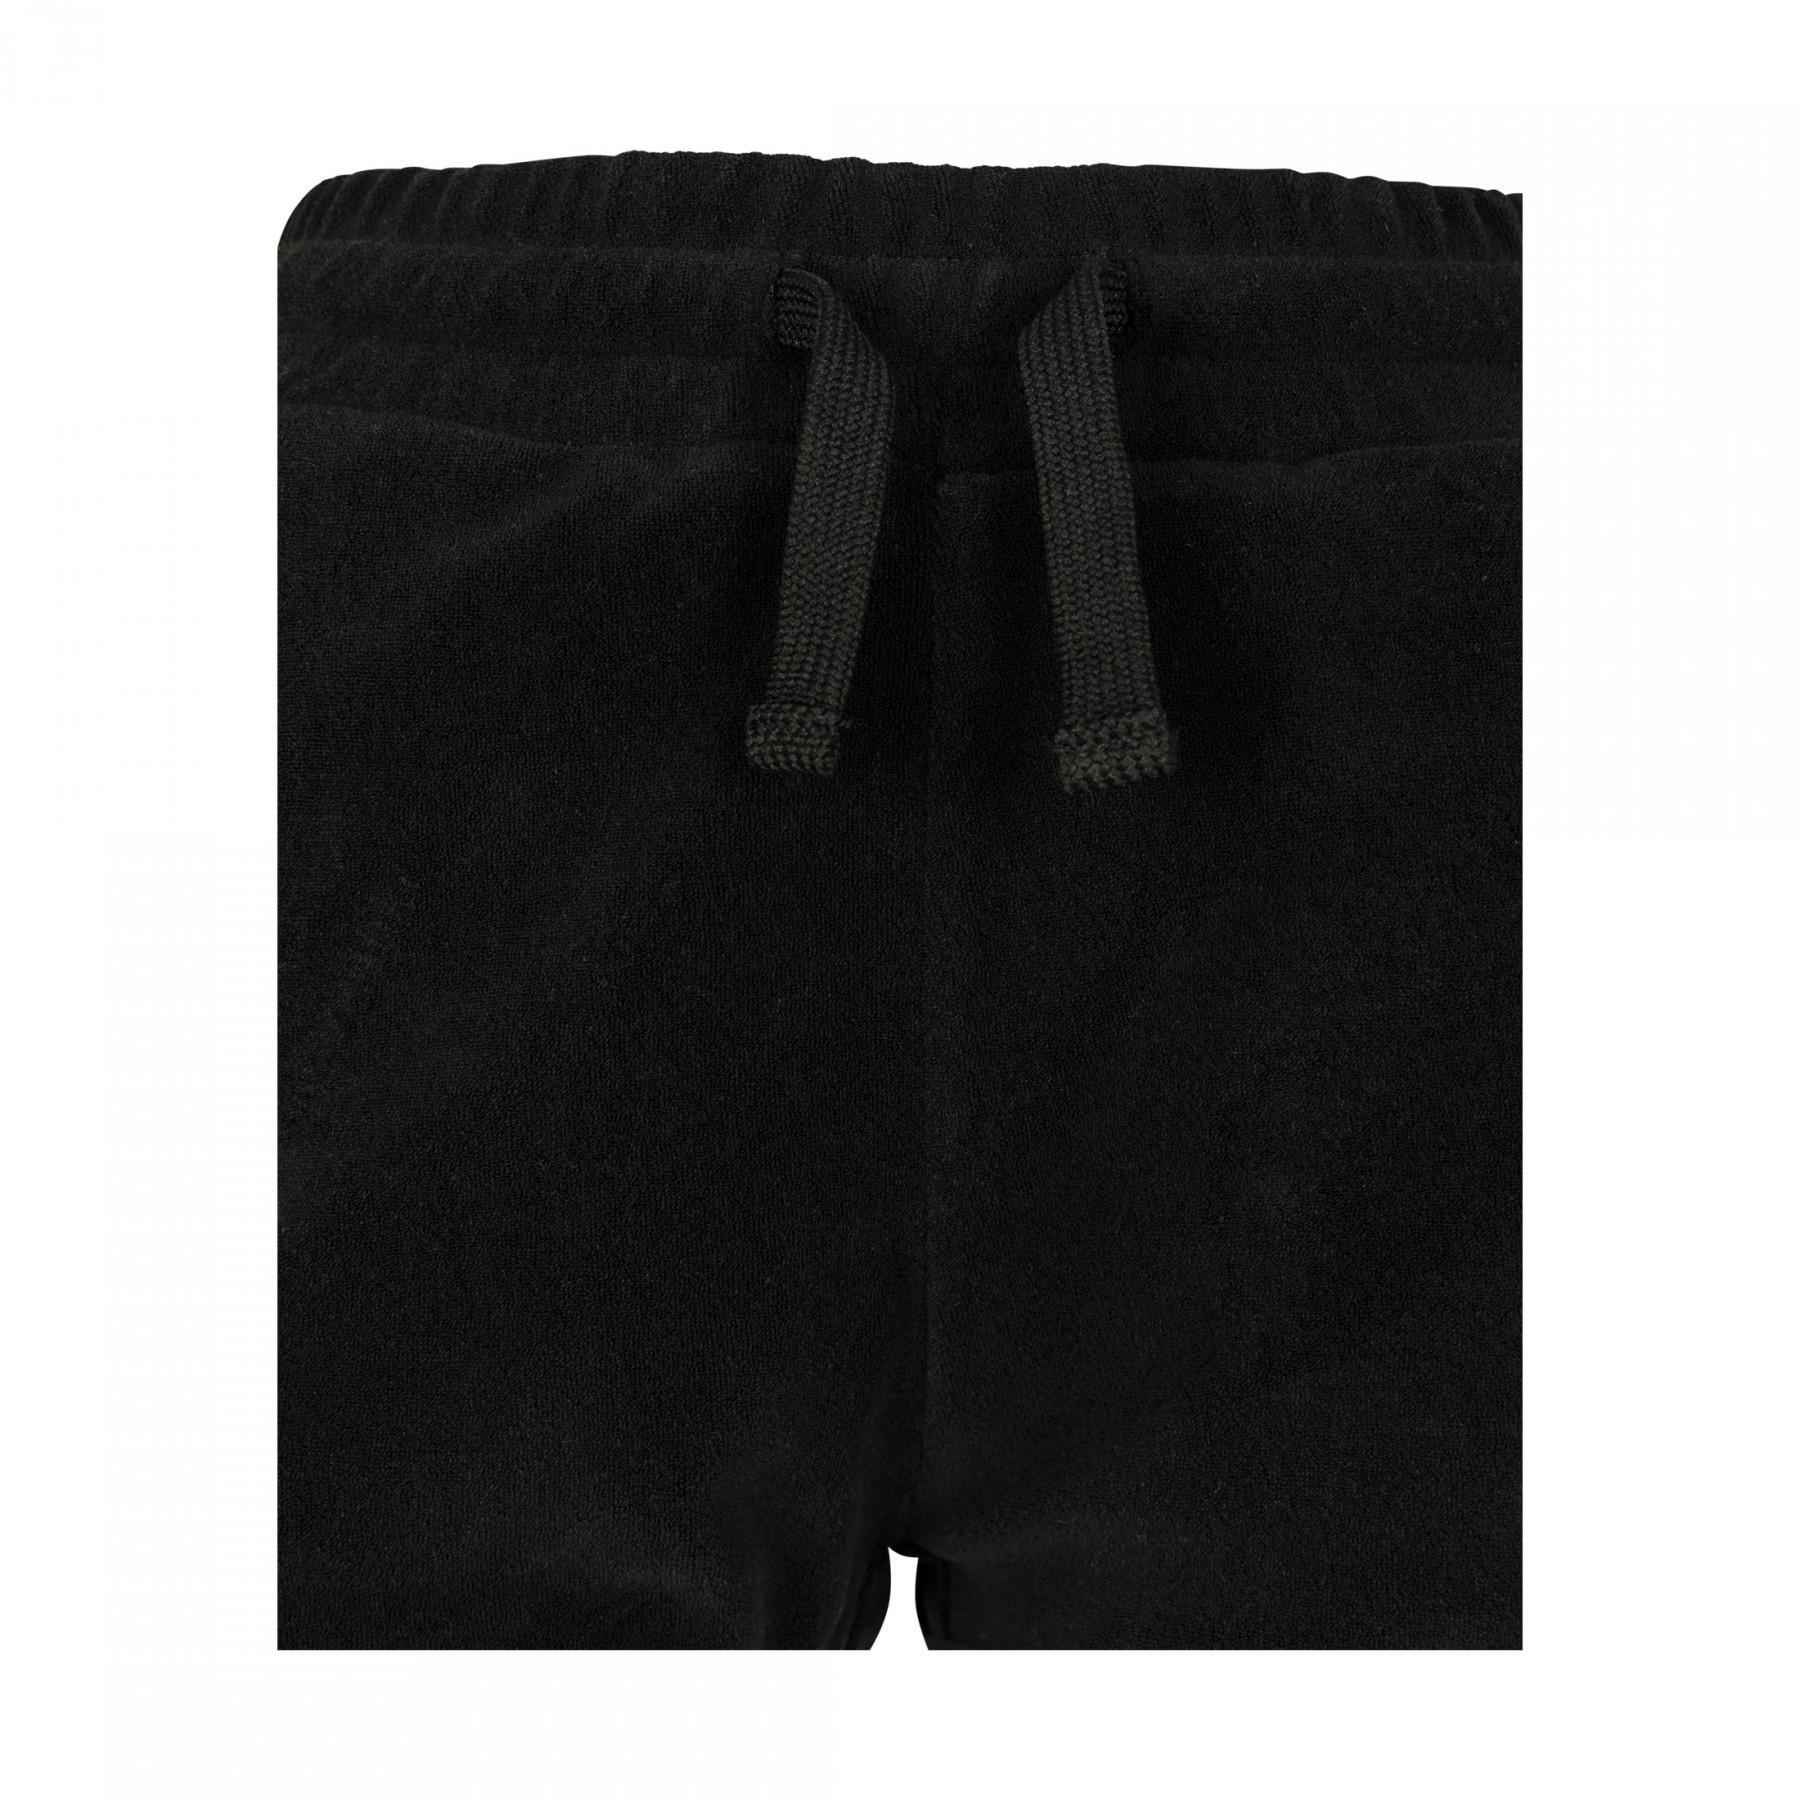 Urban Classic towel hot women's shorts